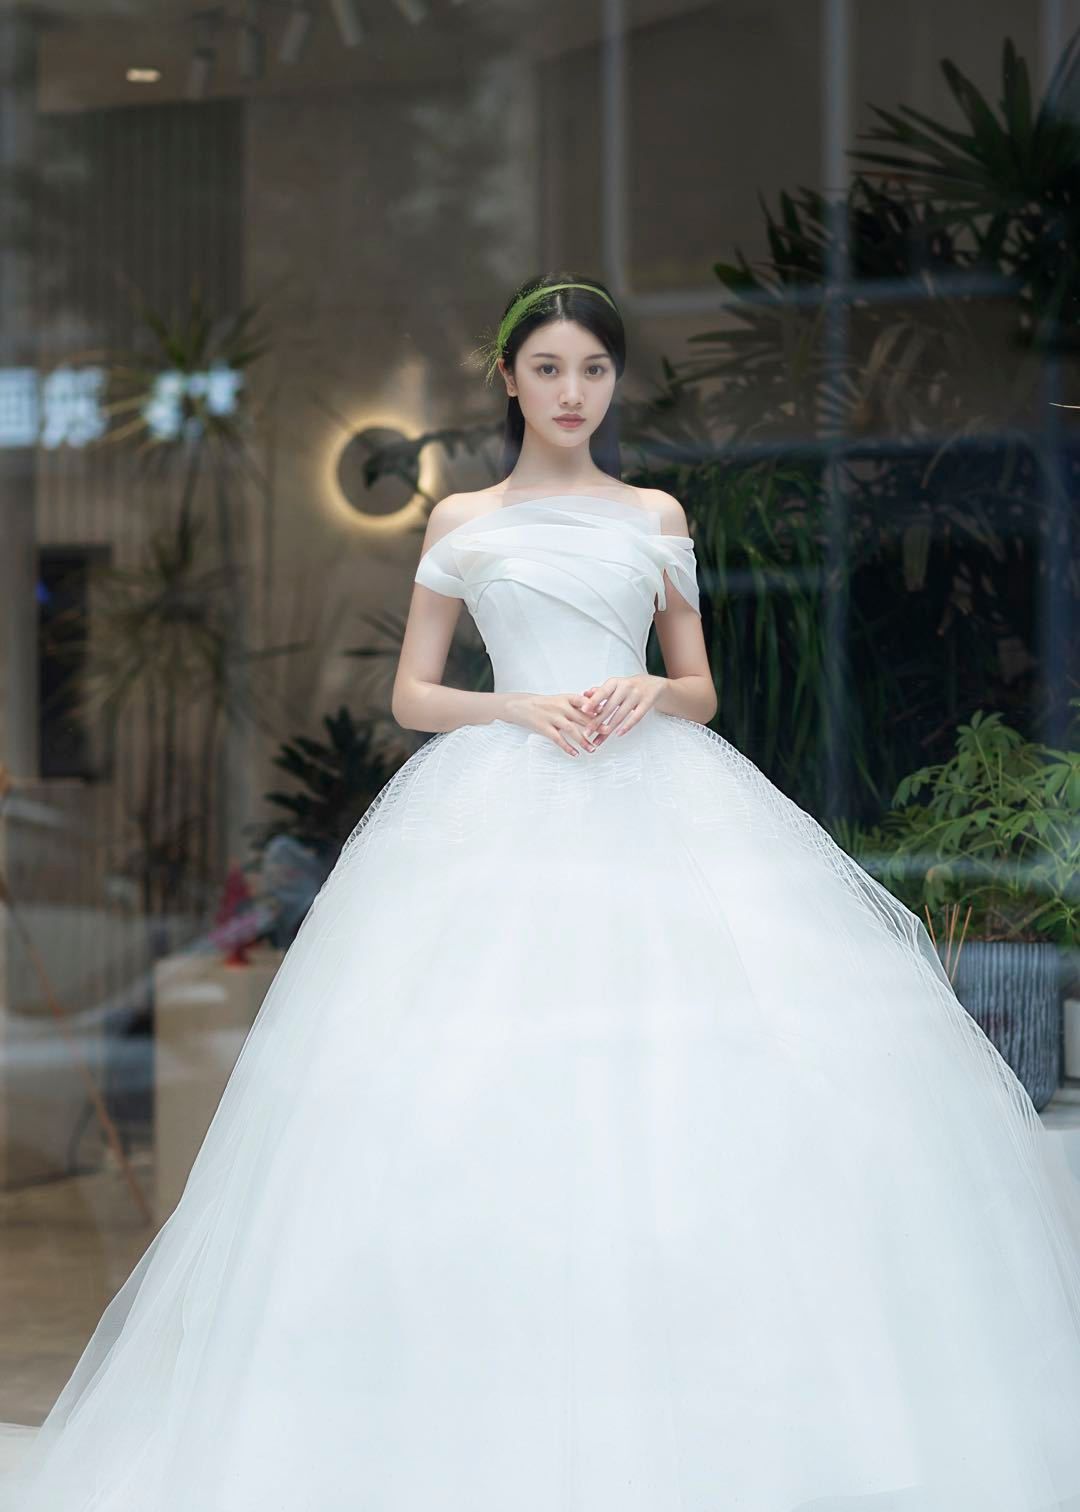 裙身无论是上半身还是下半身都呈现独特的百合造型,突出了婚纱优雅